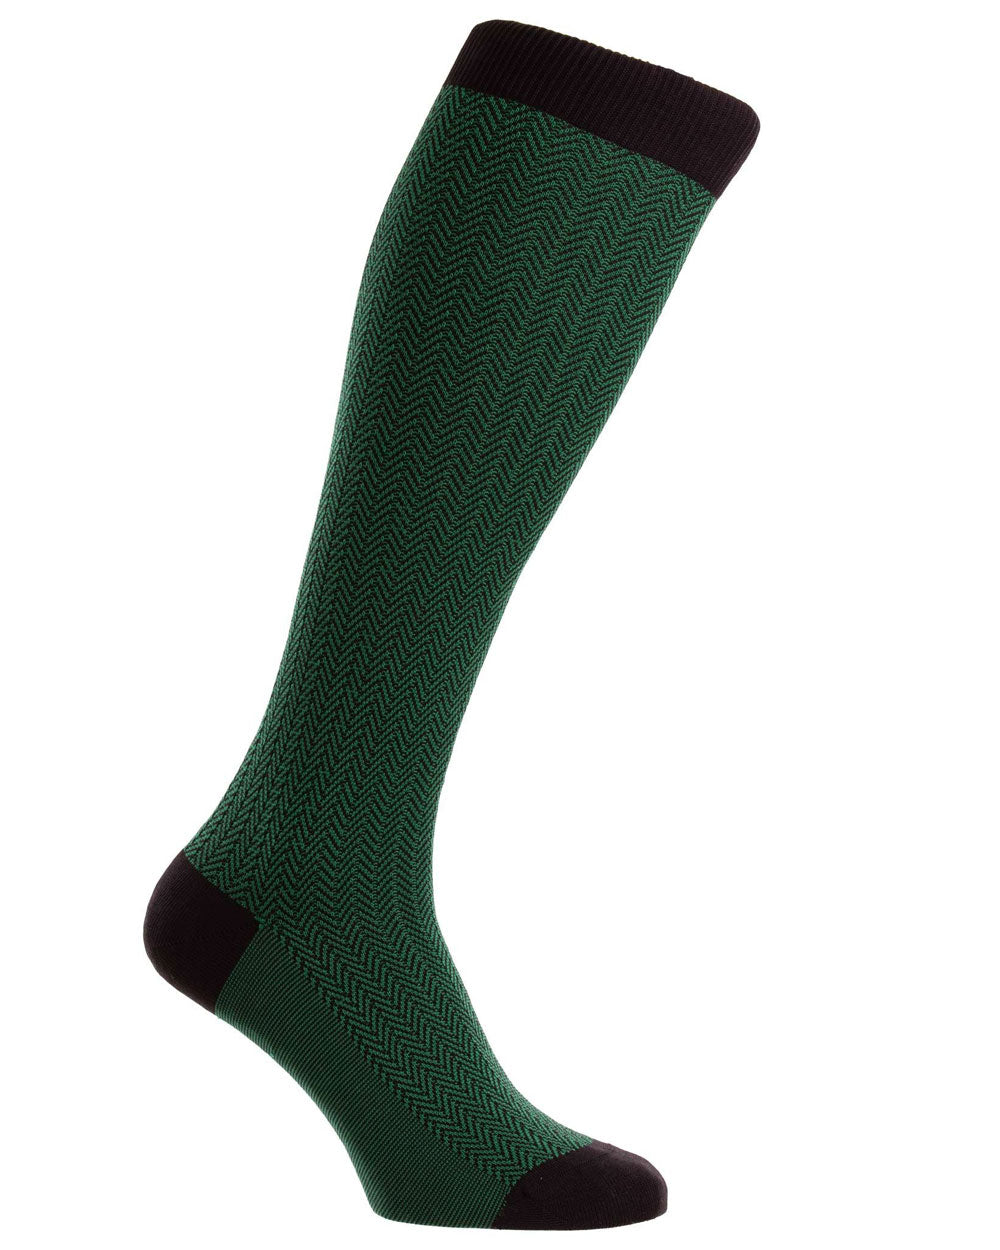 Herringbone Over the Calf Socks in Charcoal and Emerald